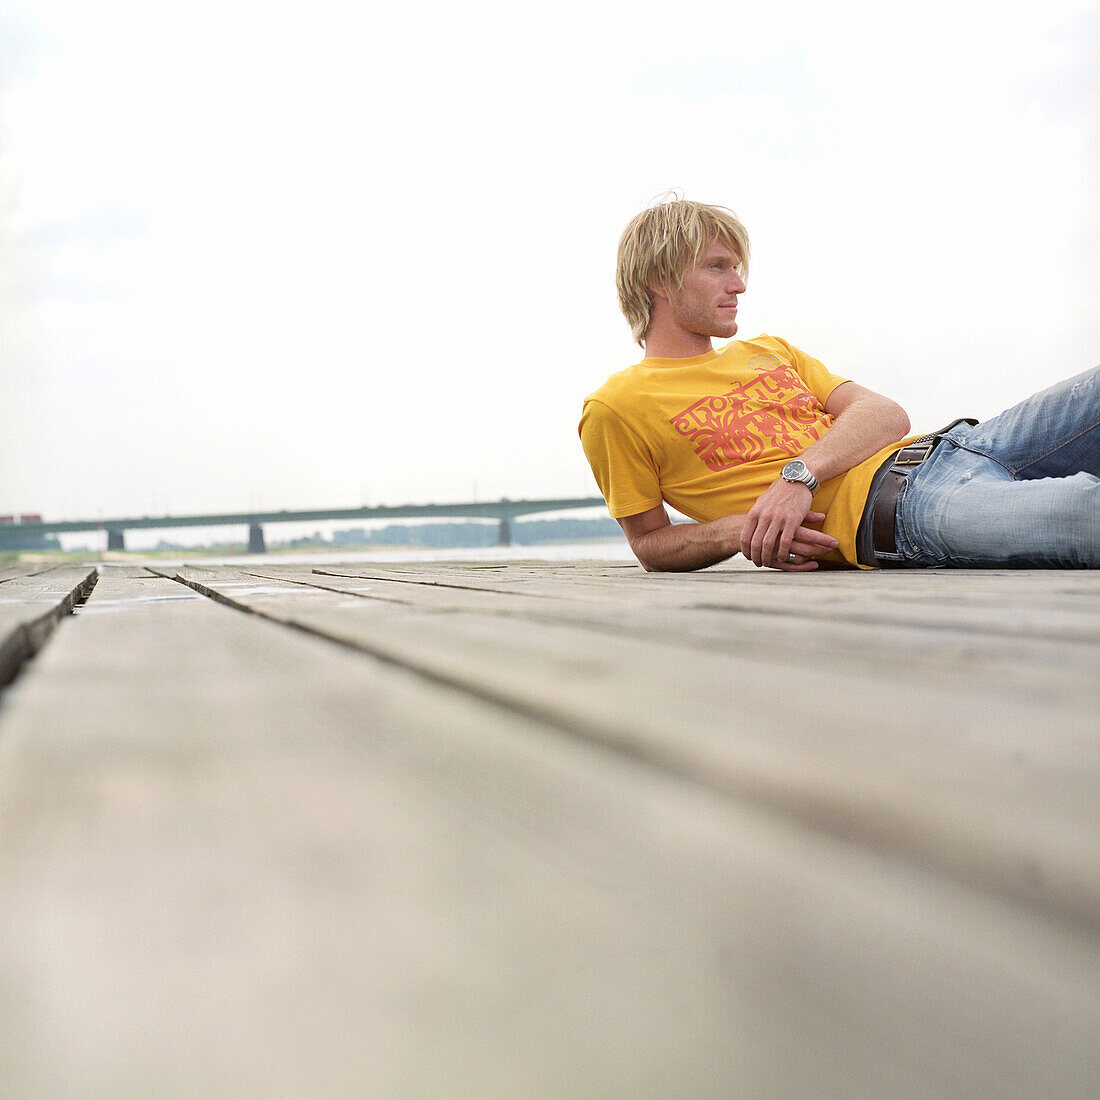 Mann liegt auf Holzboden, jung, blond, modisch, gelbes shirt, jeans, holzbolen, rhein, holzplattform, freizeit, entspannung, ruhe, deutscher